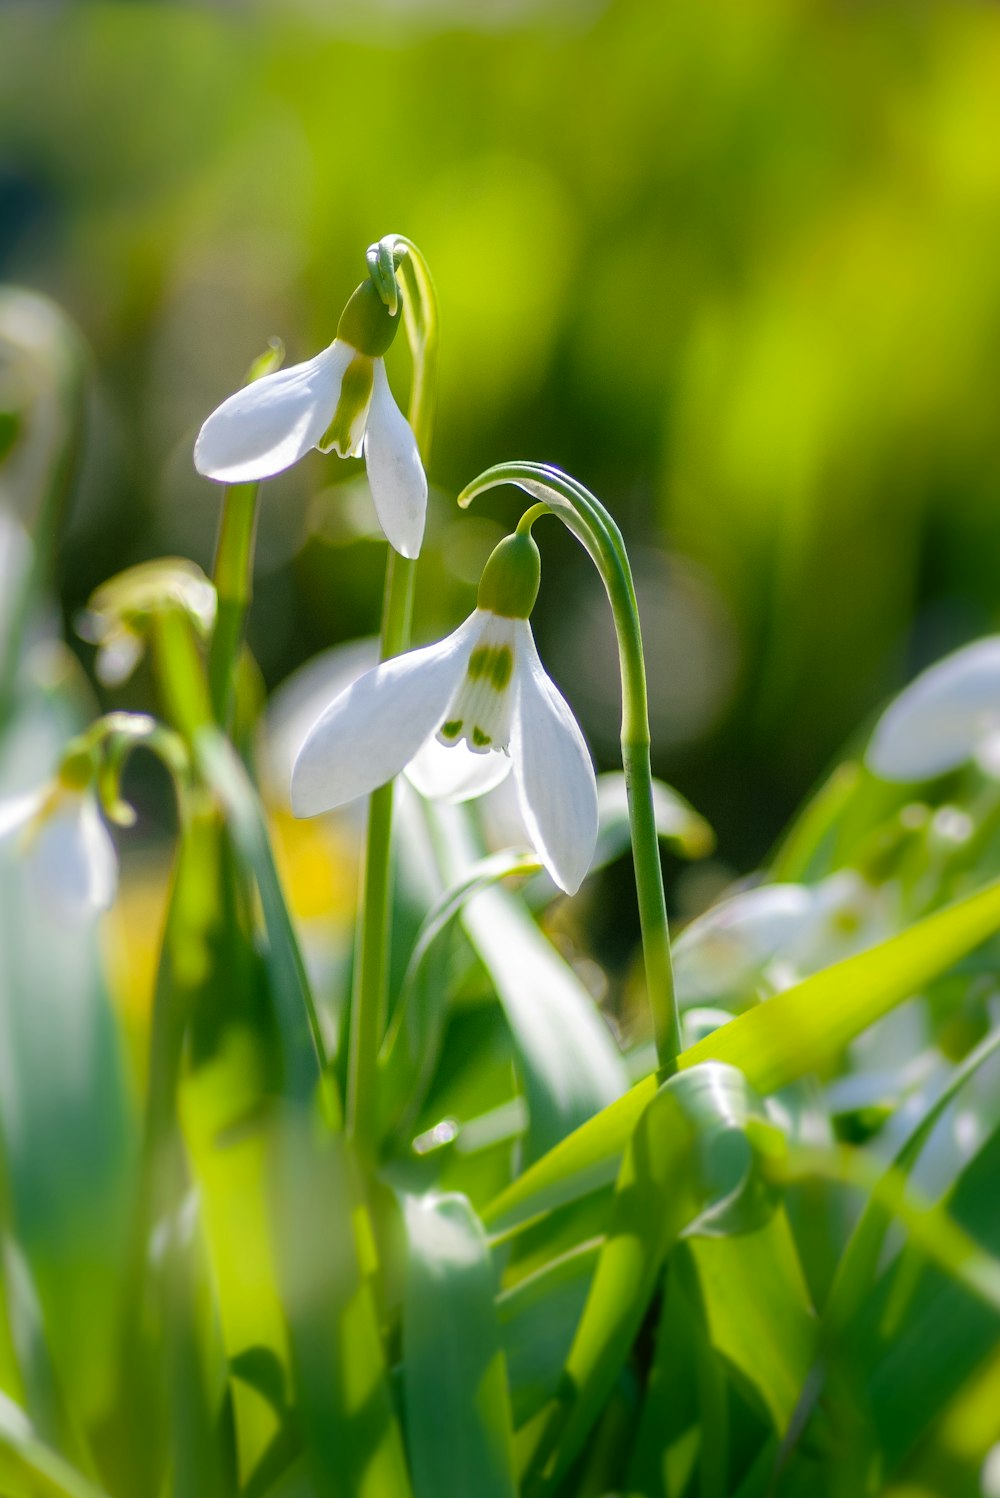 boccioli di fiori bianchi in lente tilt shift